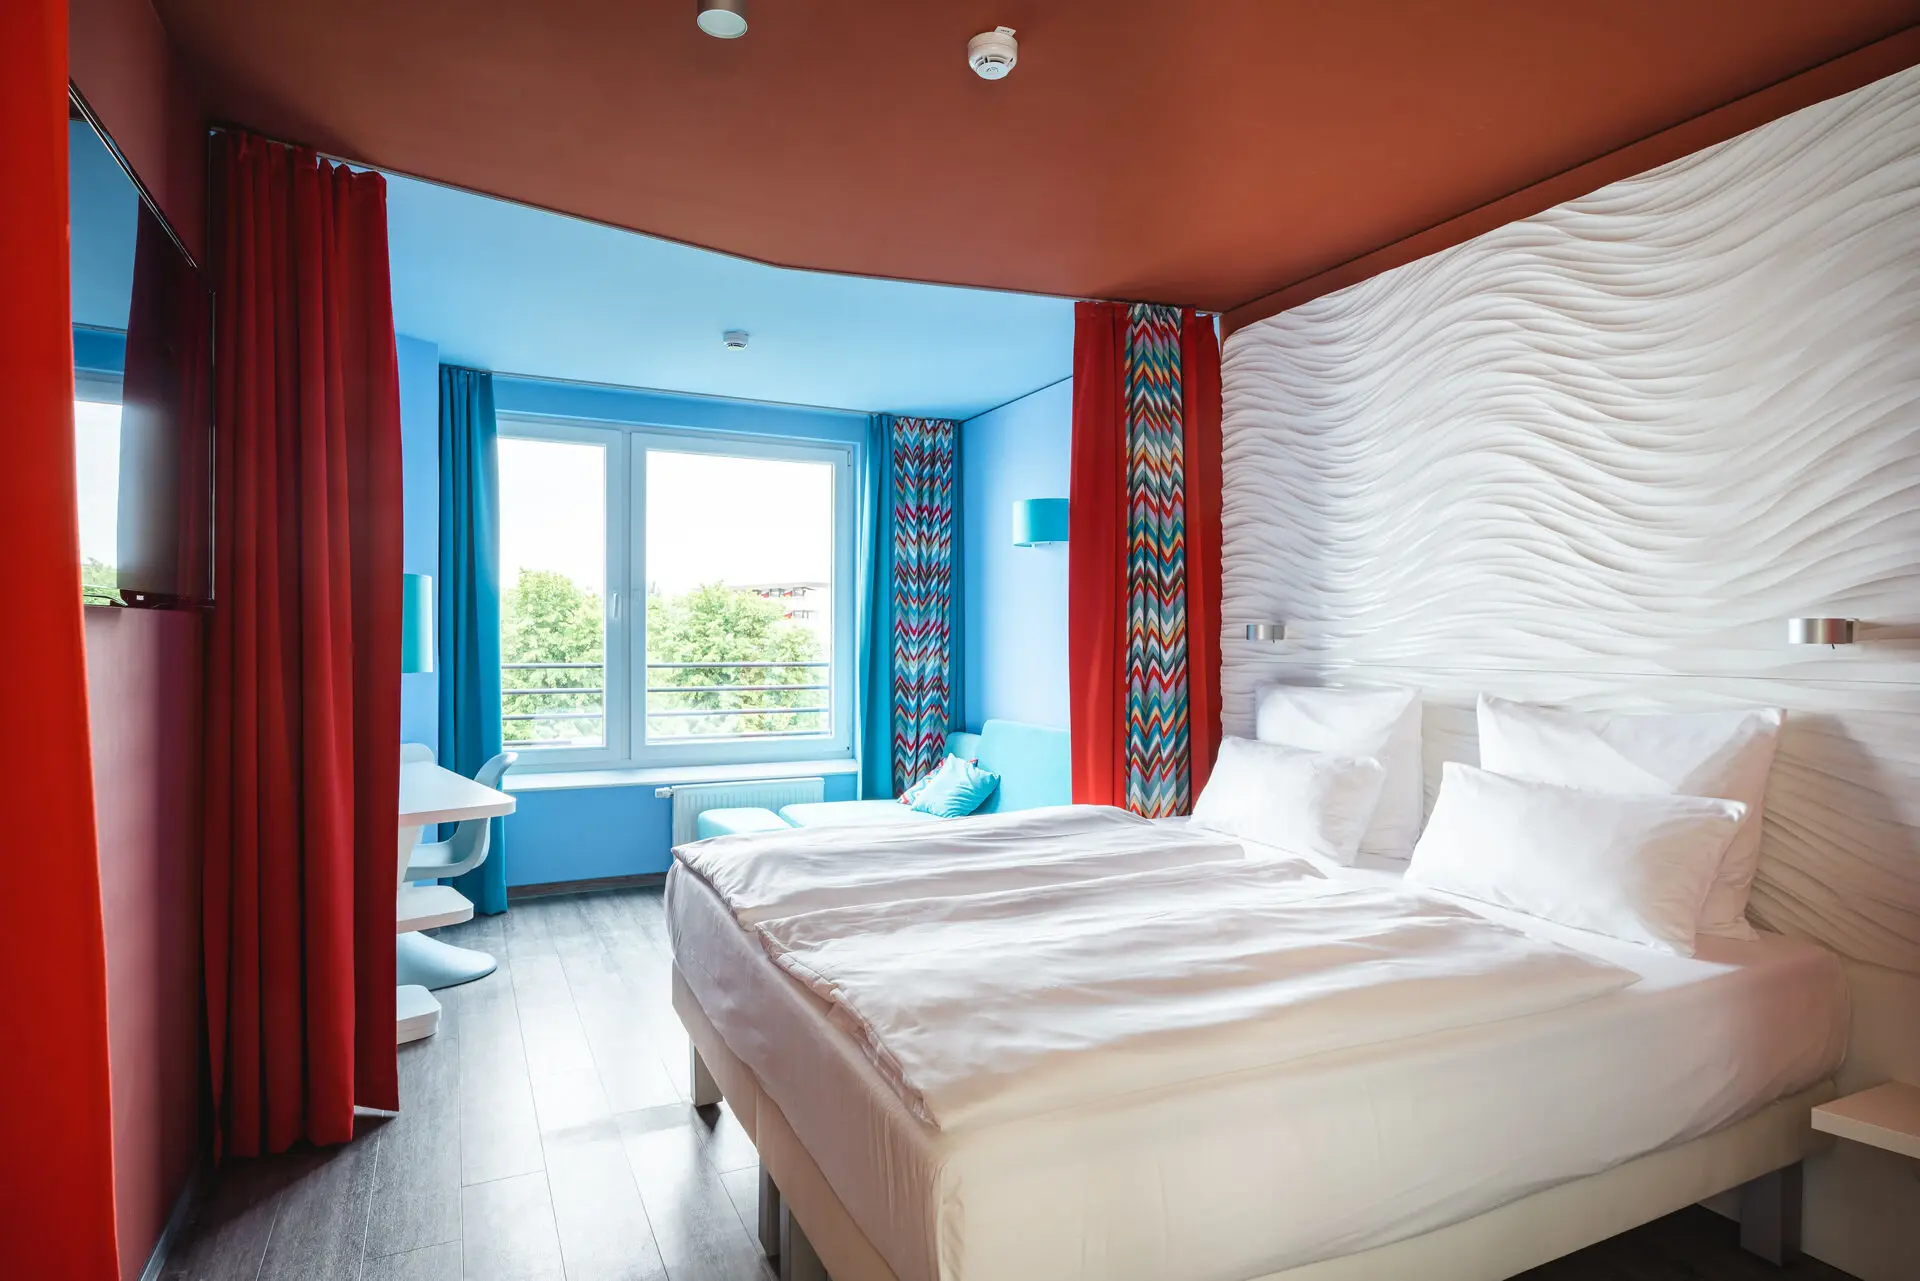 Ein Zimmer mit zwei Betten und roten Vorhängen vor einem Fenster im Hintergrund